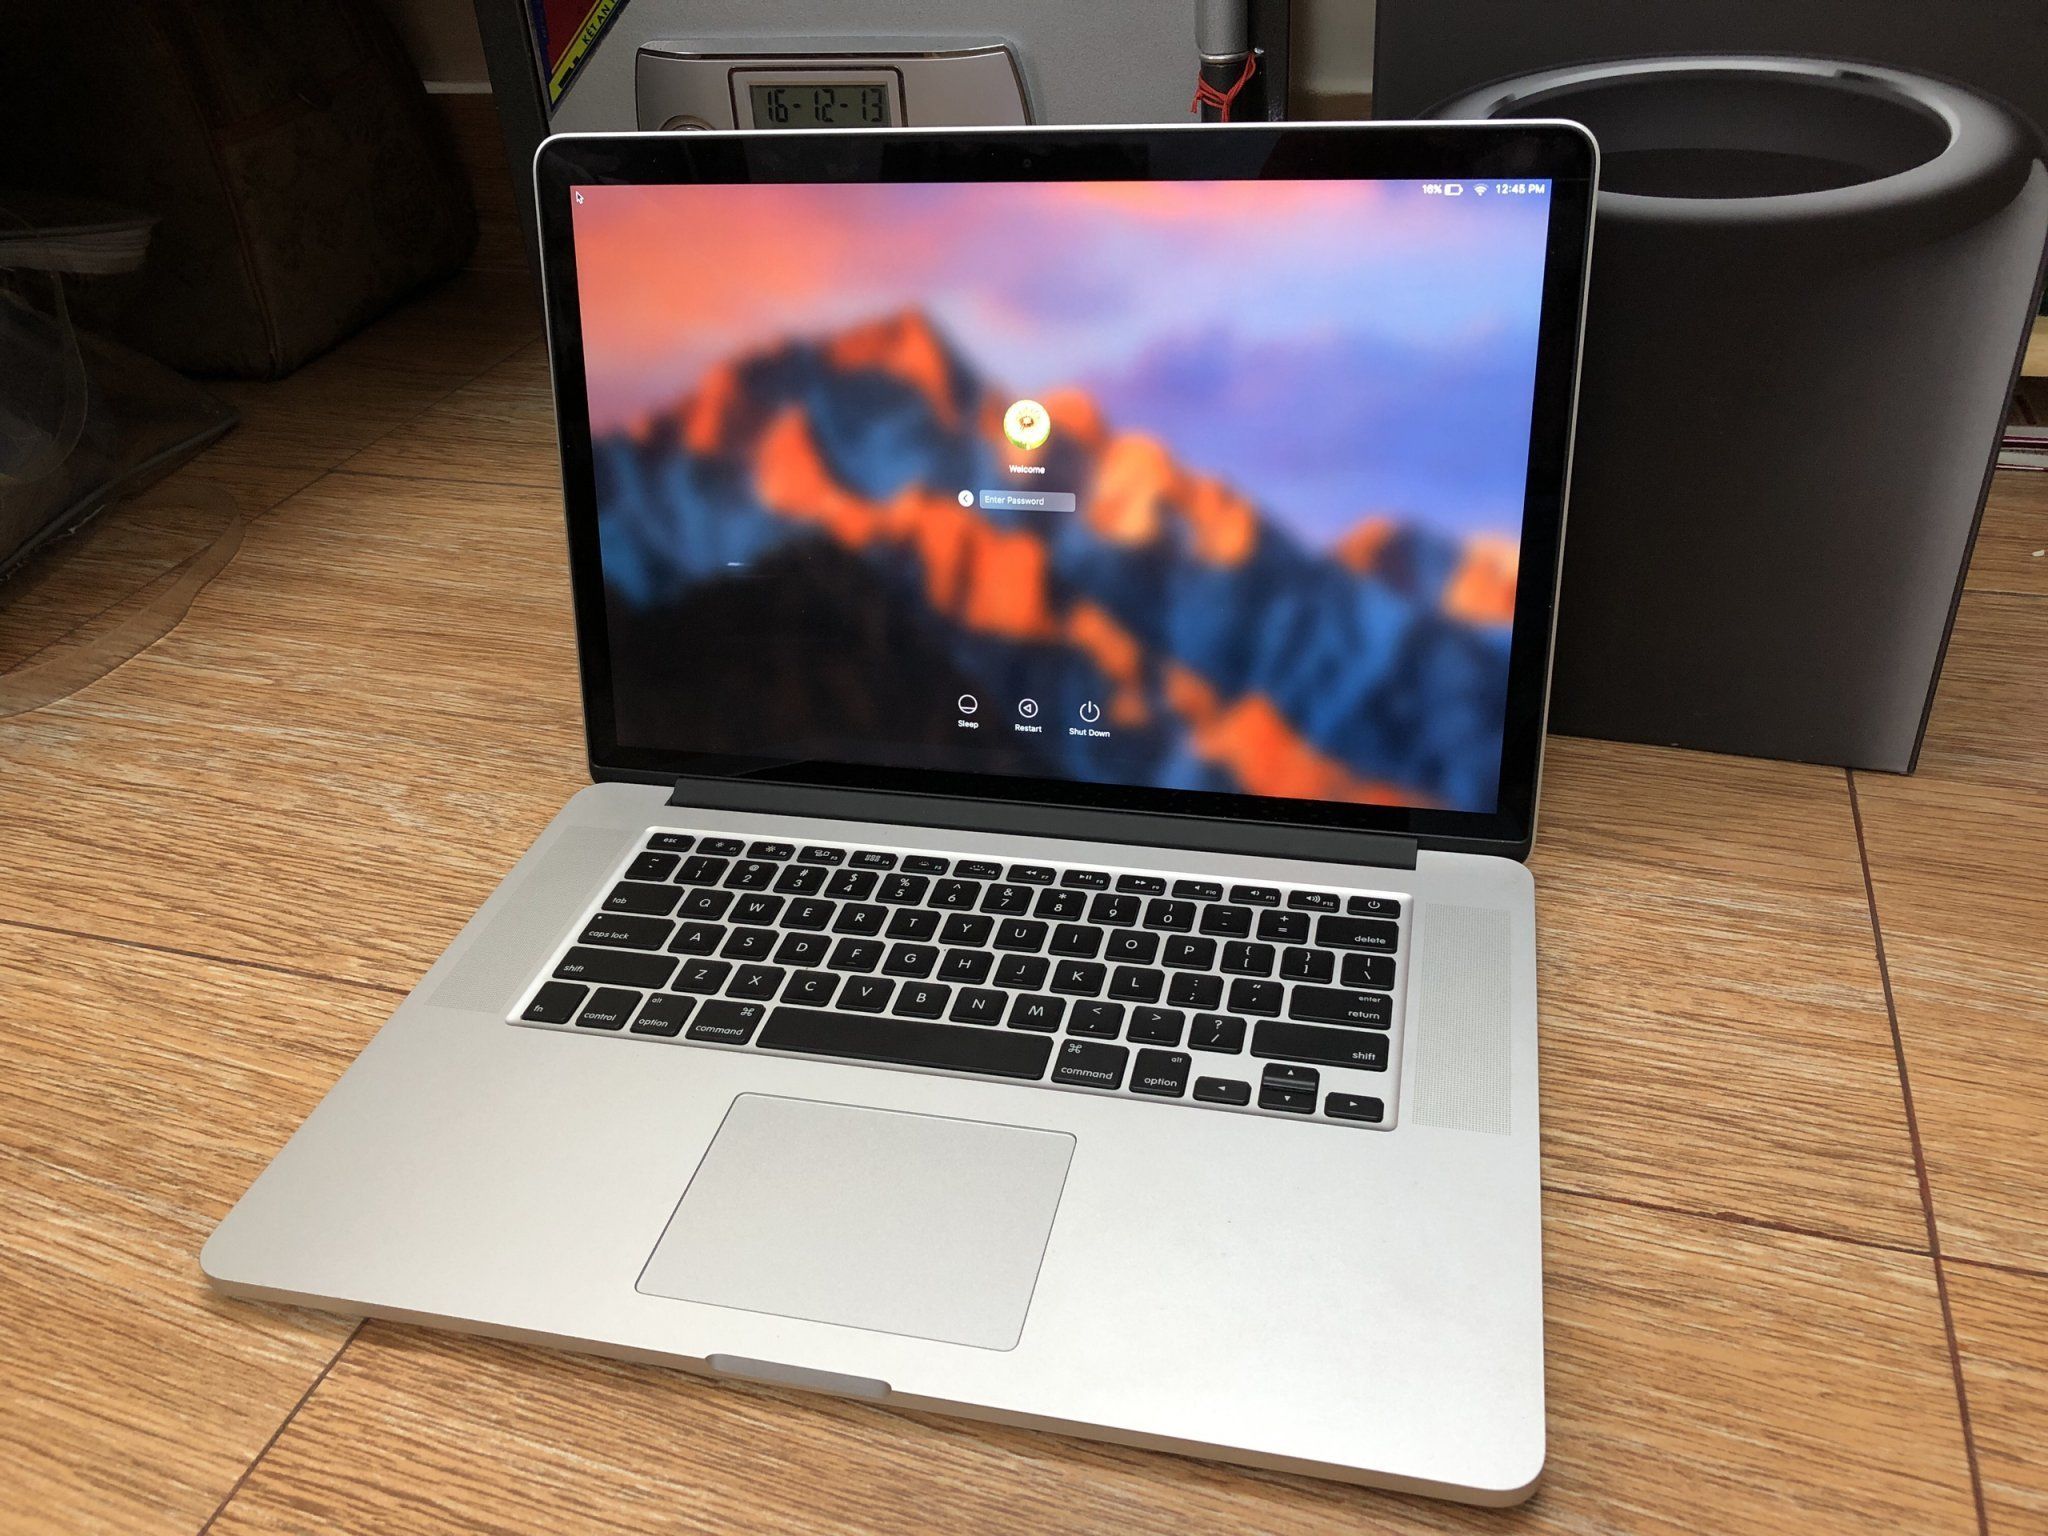 Macbook Pro 15inch bị phát hiện lỗi pin có thể gây cháy nổ.